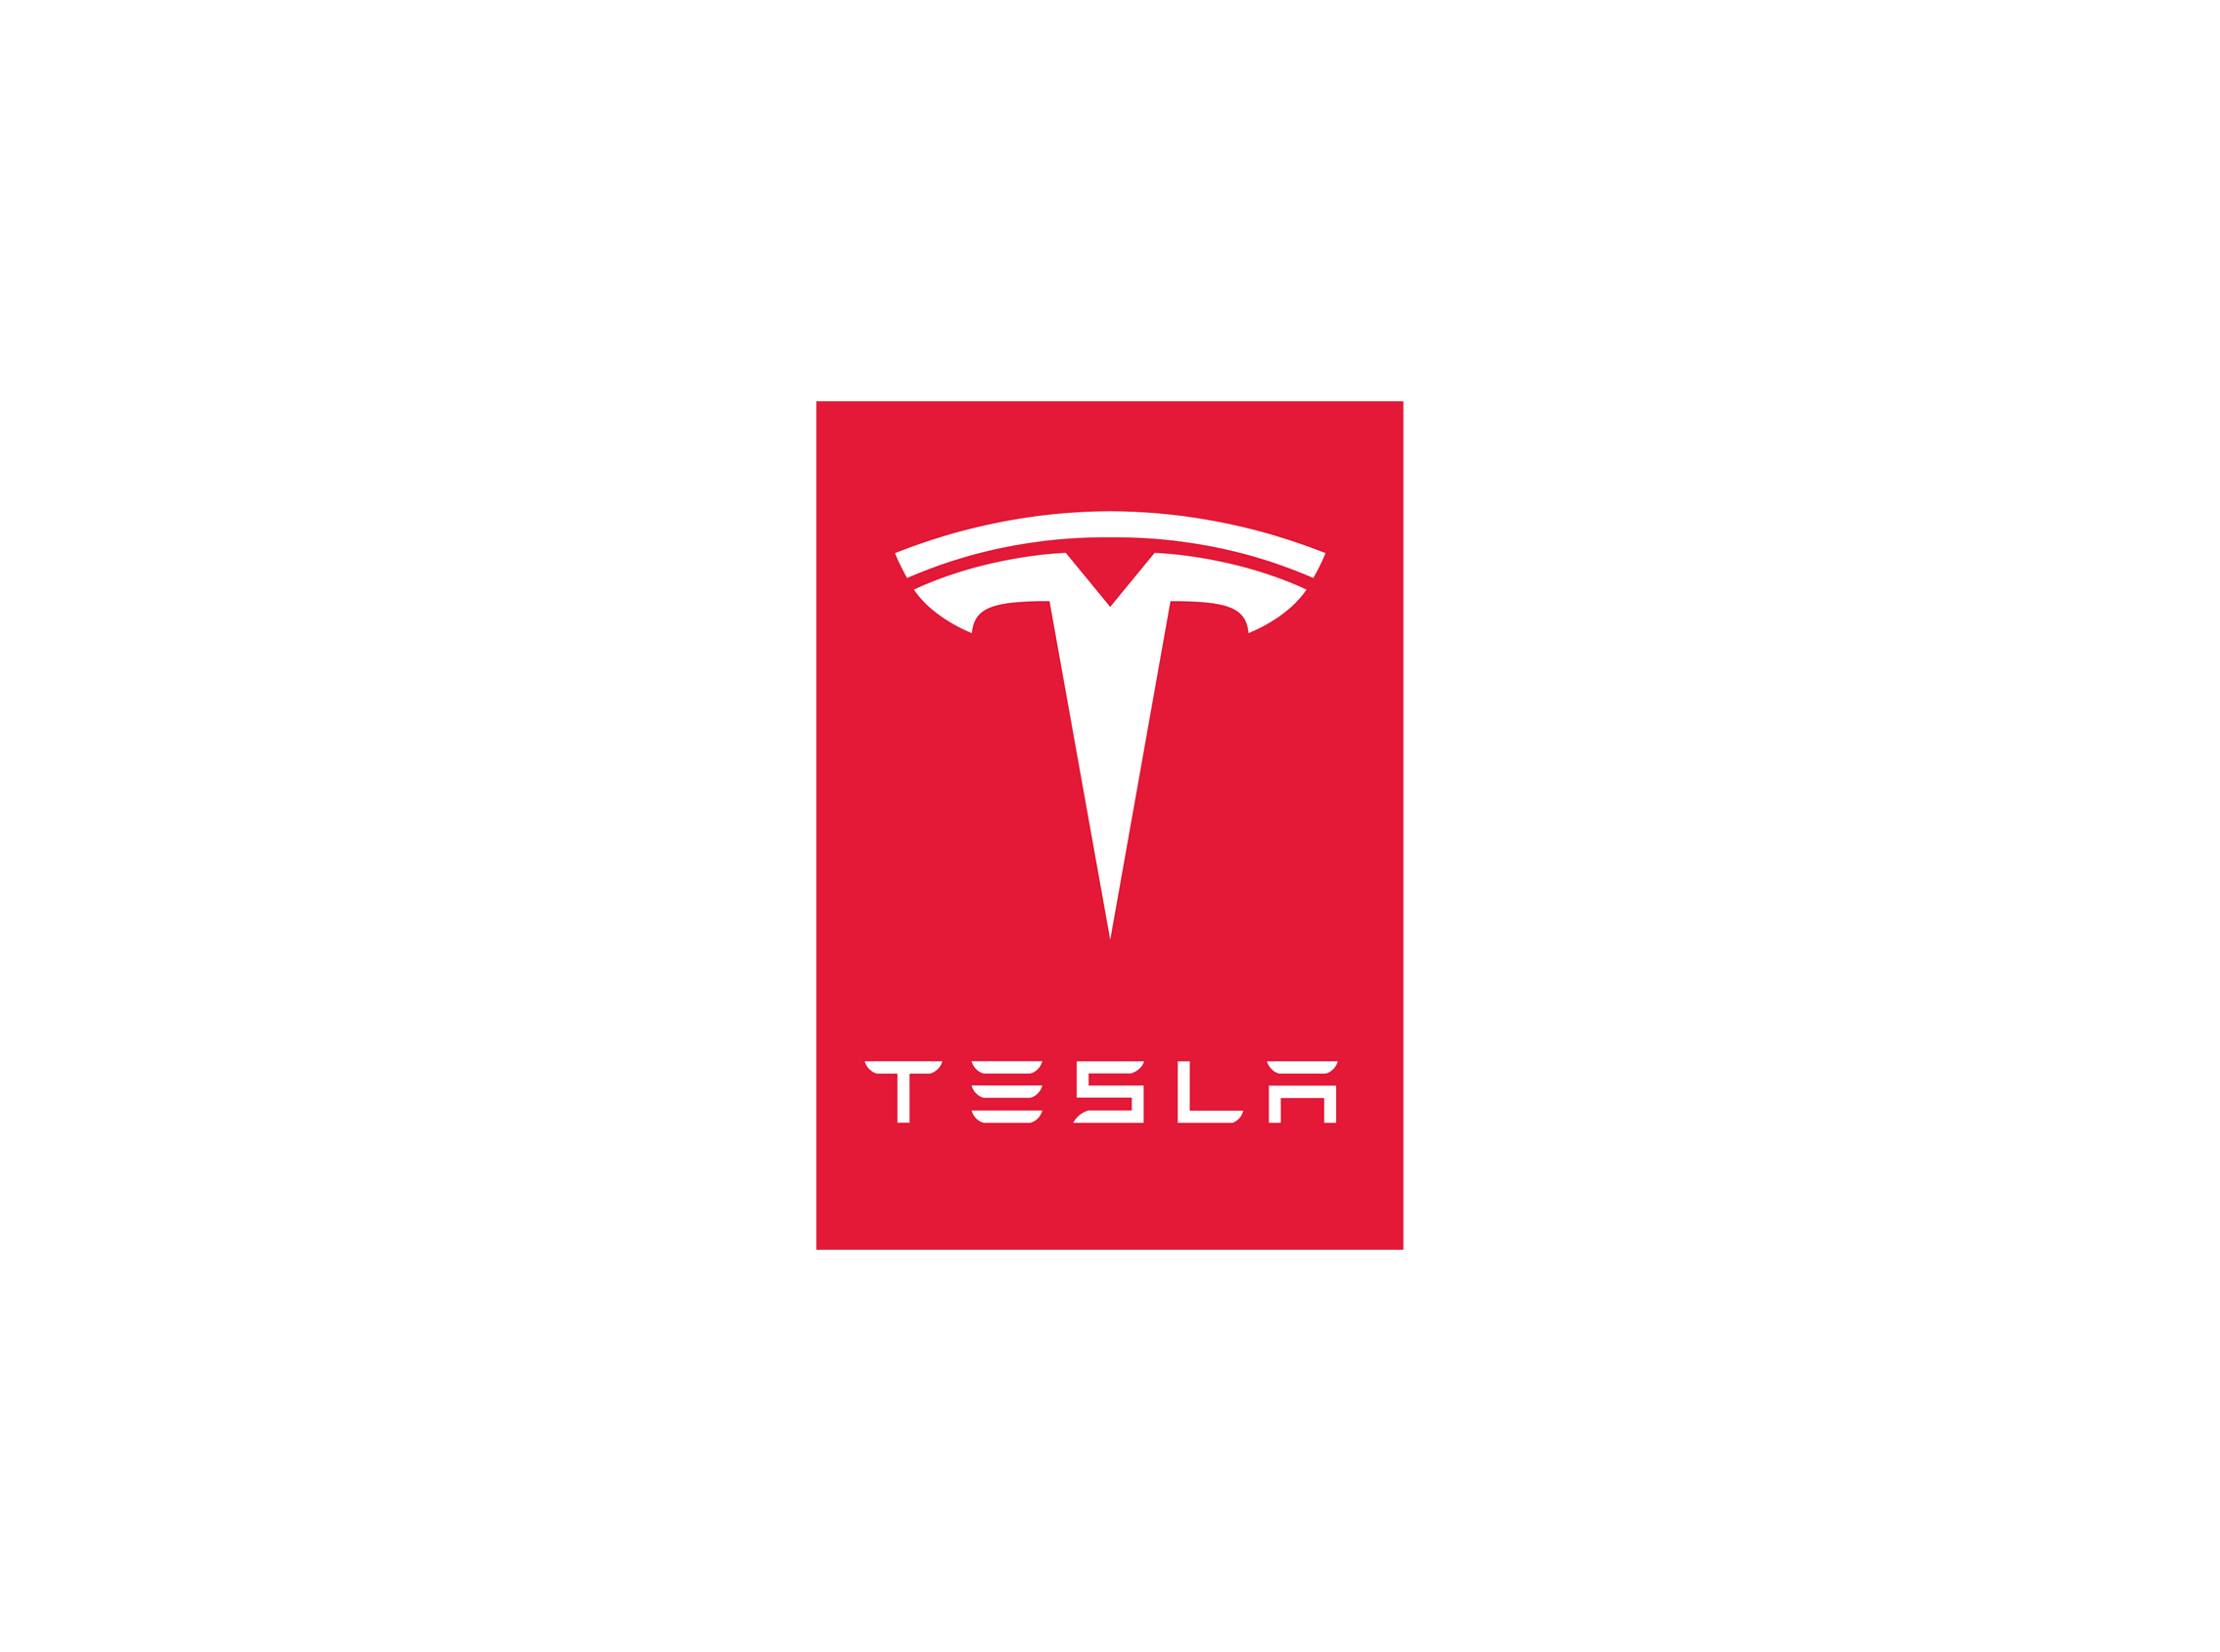 Tesla-logo-tag-red-white.png